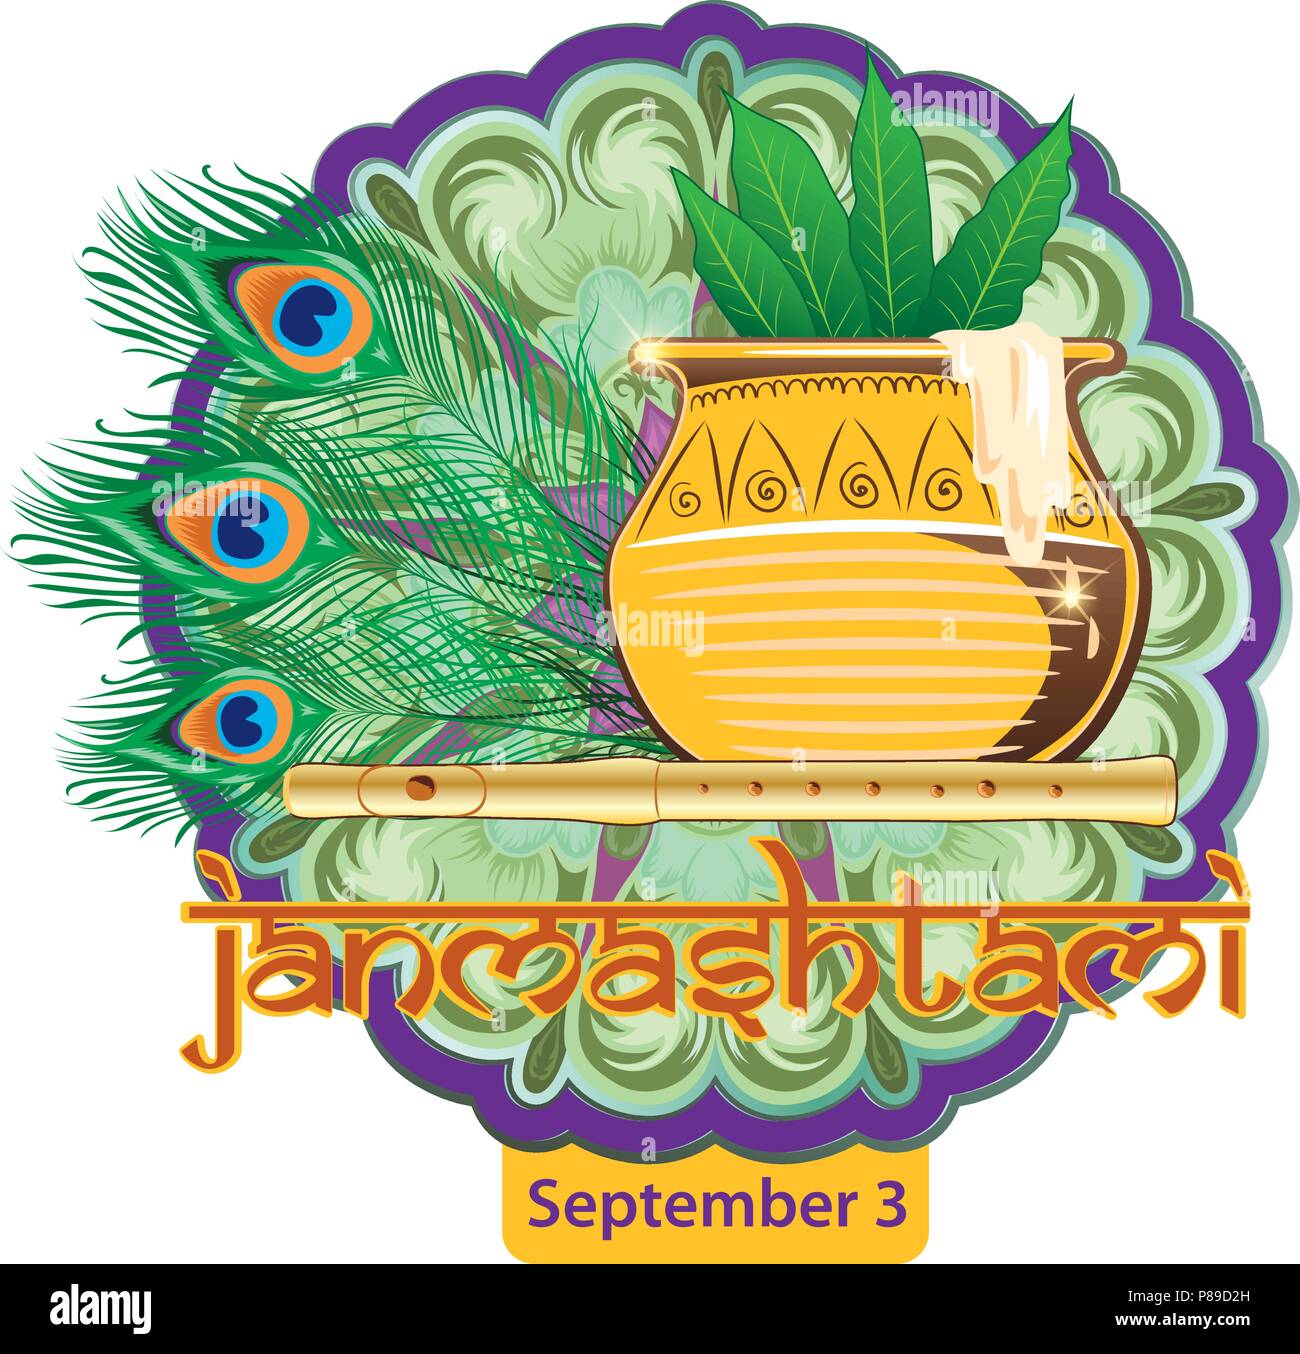 Illustrazione di Krishna in Happy Janmashtami festival dell India con testo in lingua hindi significato Shri Krishn Janmashtami Illustrazione Vettoriale